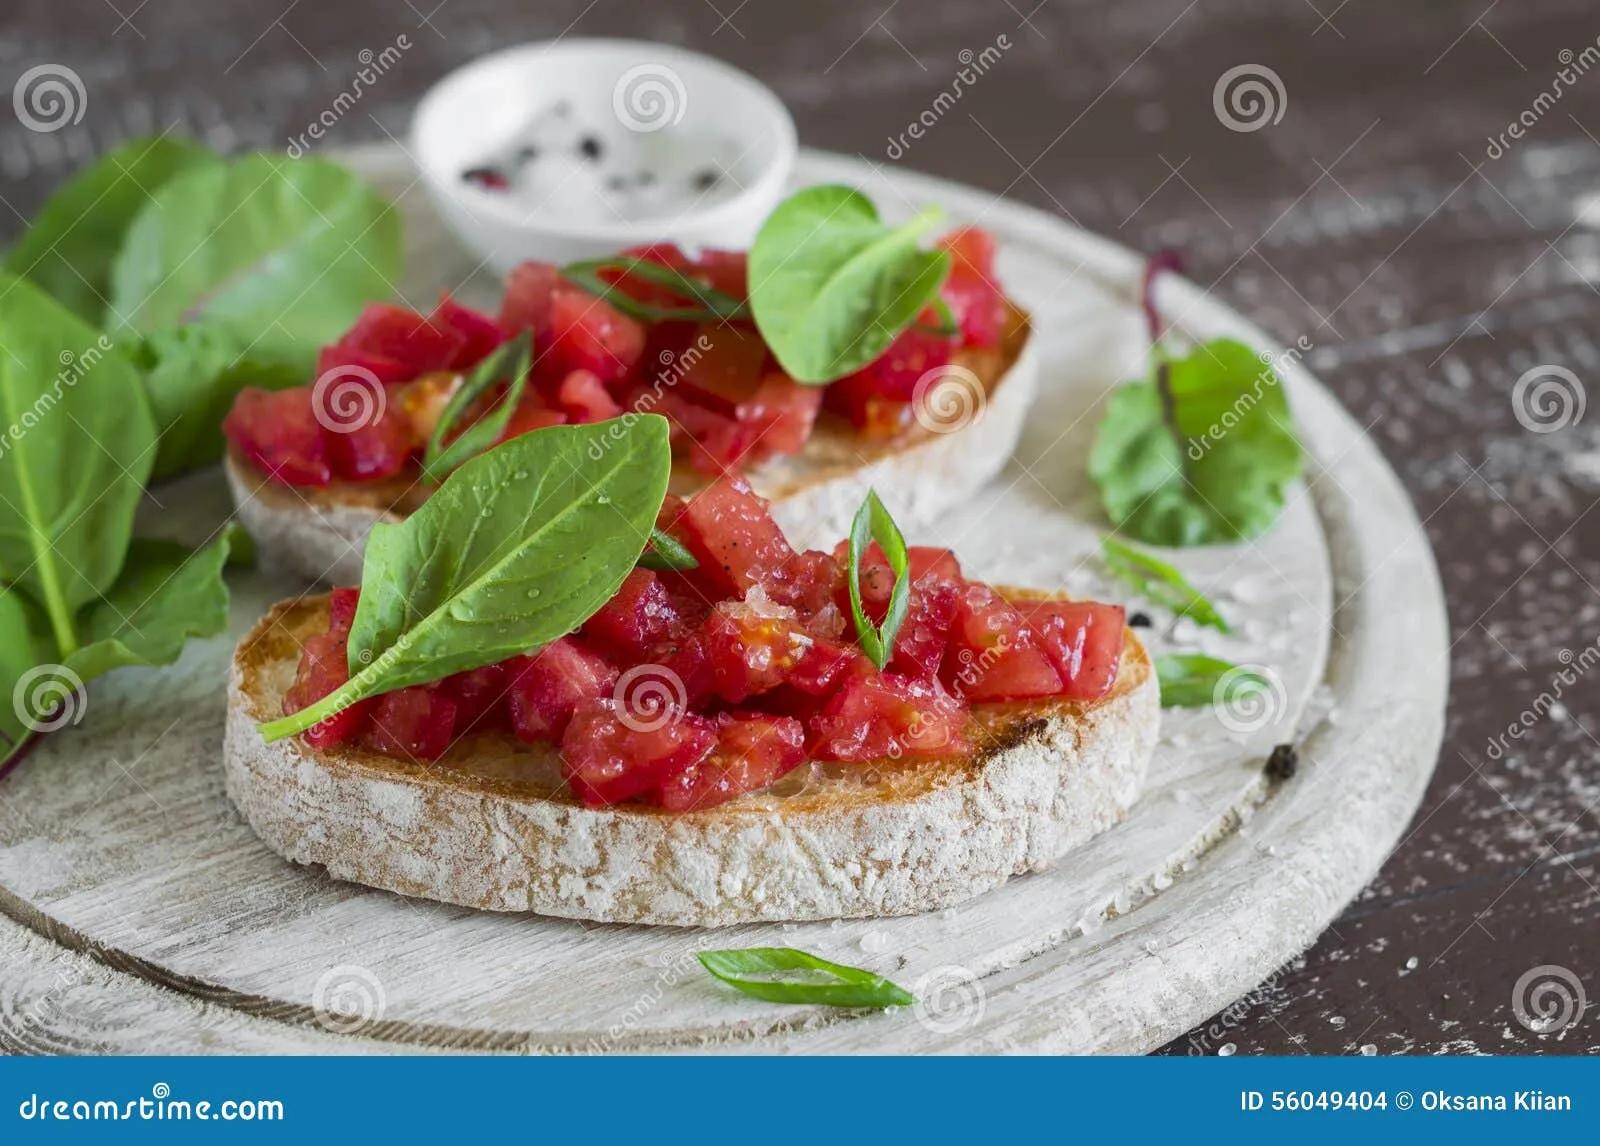 Bruschetta Mit Tomaten Und Frischem Spinat Stockfoto - Bild von ...